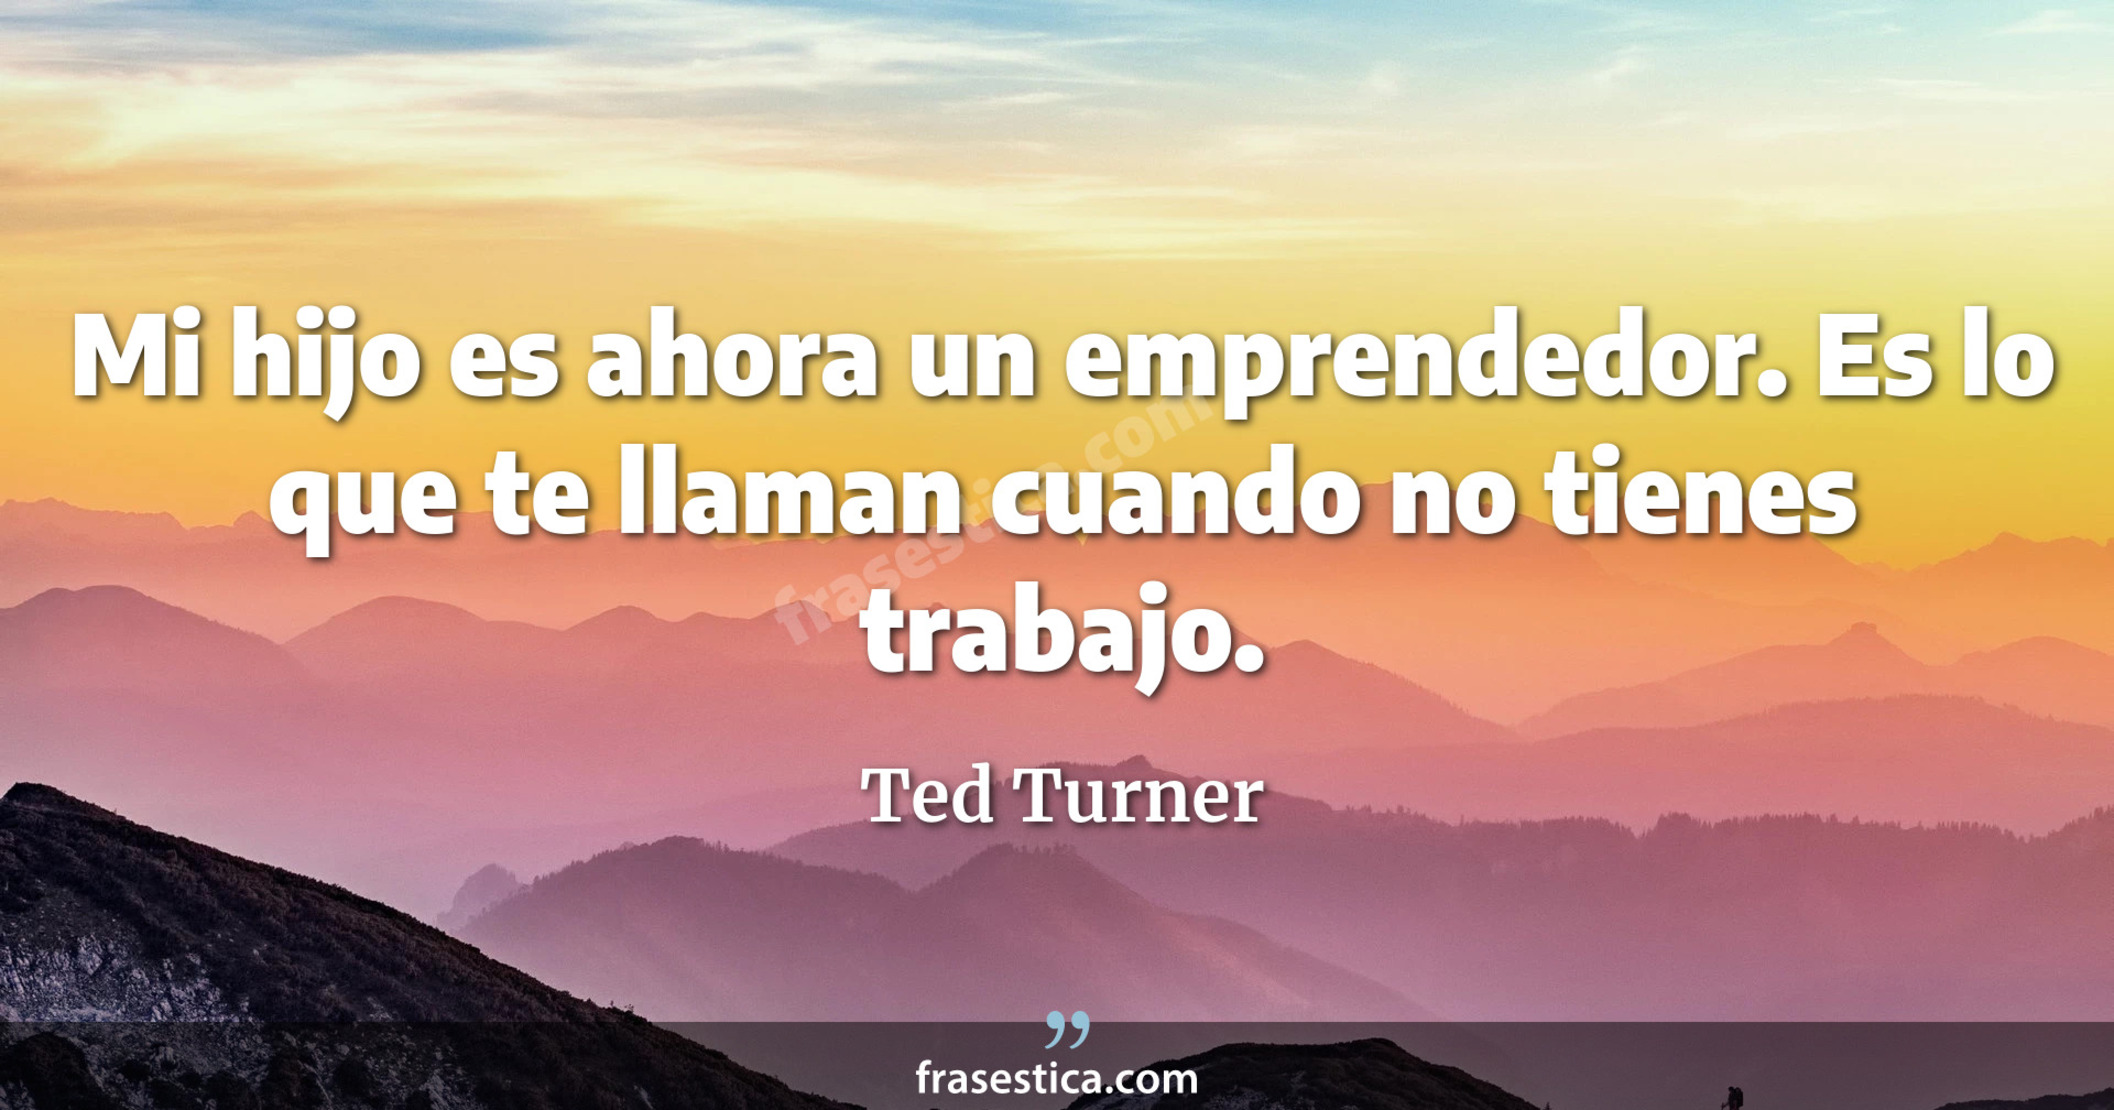 Mi hijo es ahora un emprendedor. Es lo que te llaman cuando no tienes trabajo. - Ted Turner